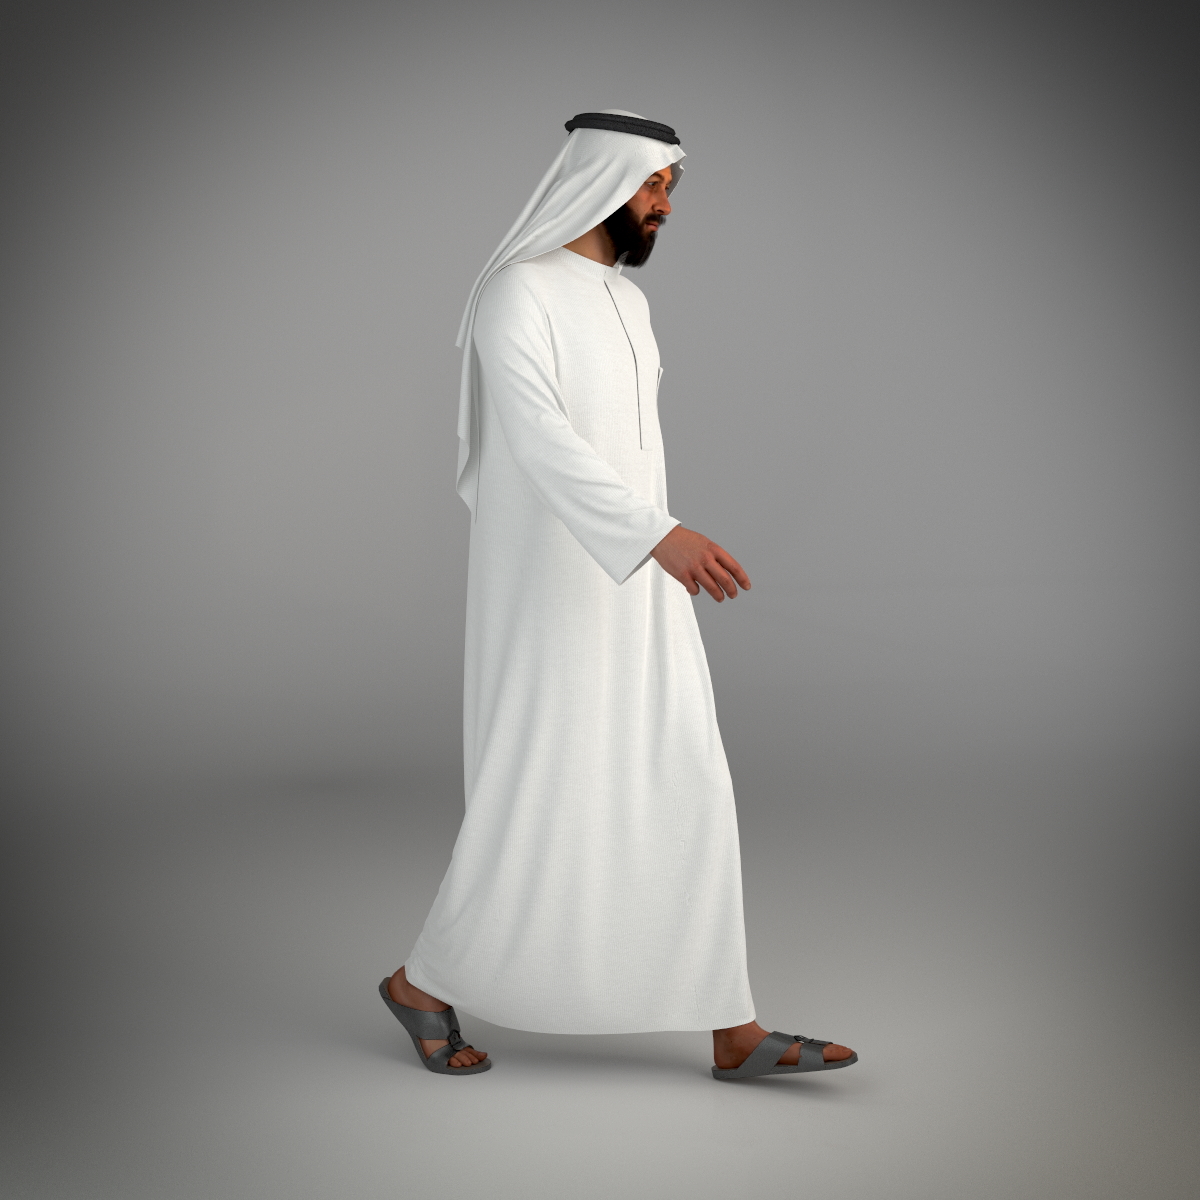 来自迪拜的传统阿拉伯男人构成3D模型 - TurboSquid 1093076